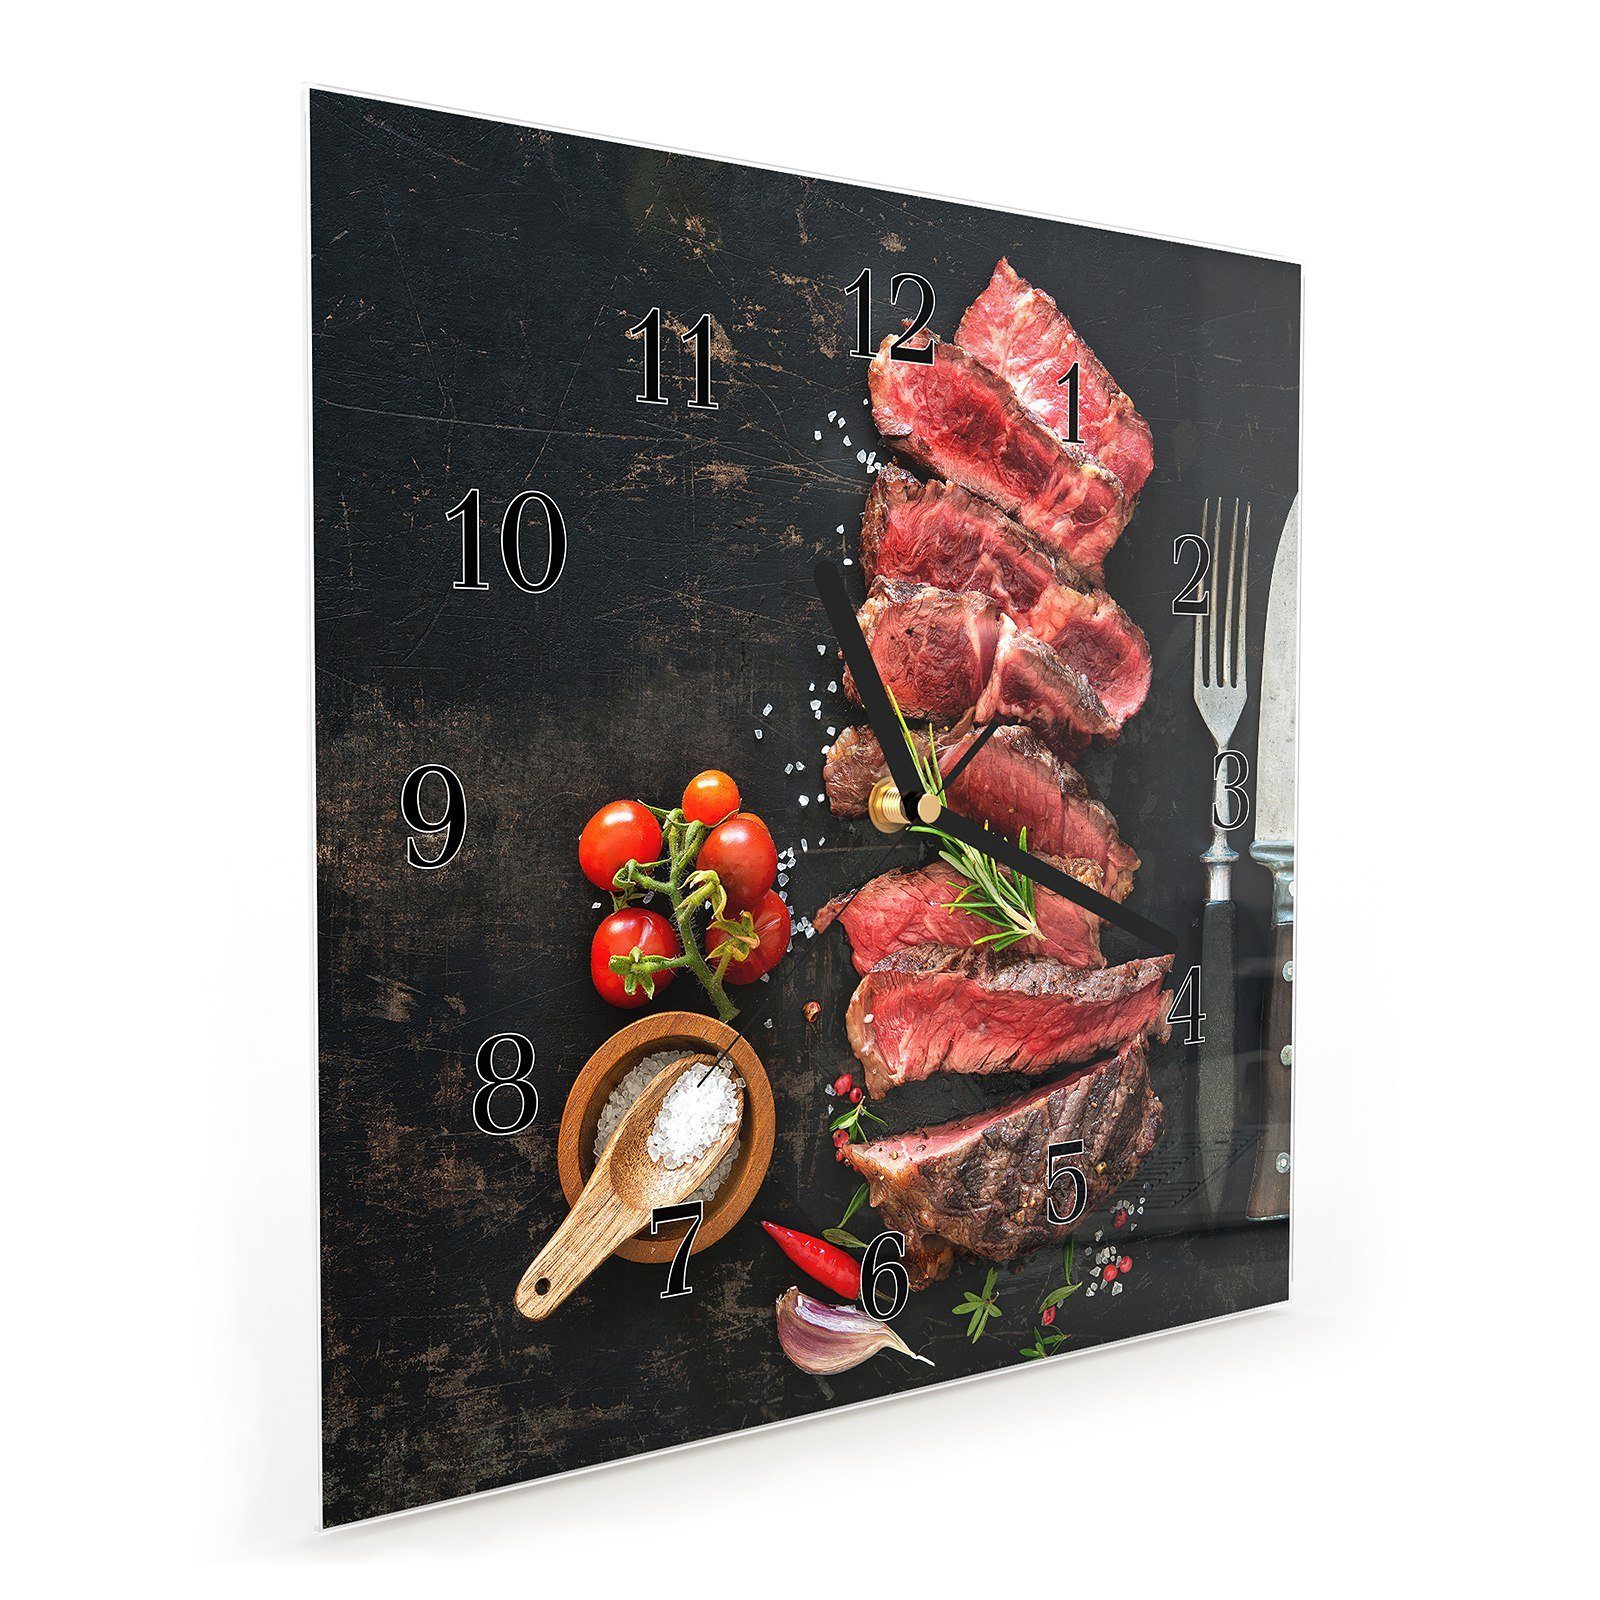 Wandkunst 30 x Wanduhr Platte Ribeye Motiv mit auf Primedeco Wanduhr Größe cm Glasuhr Steak 30